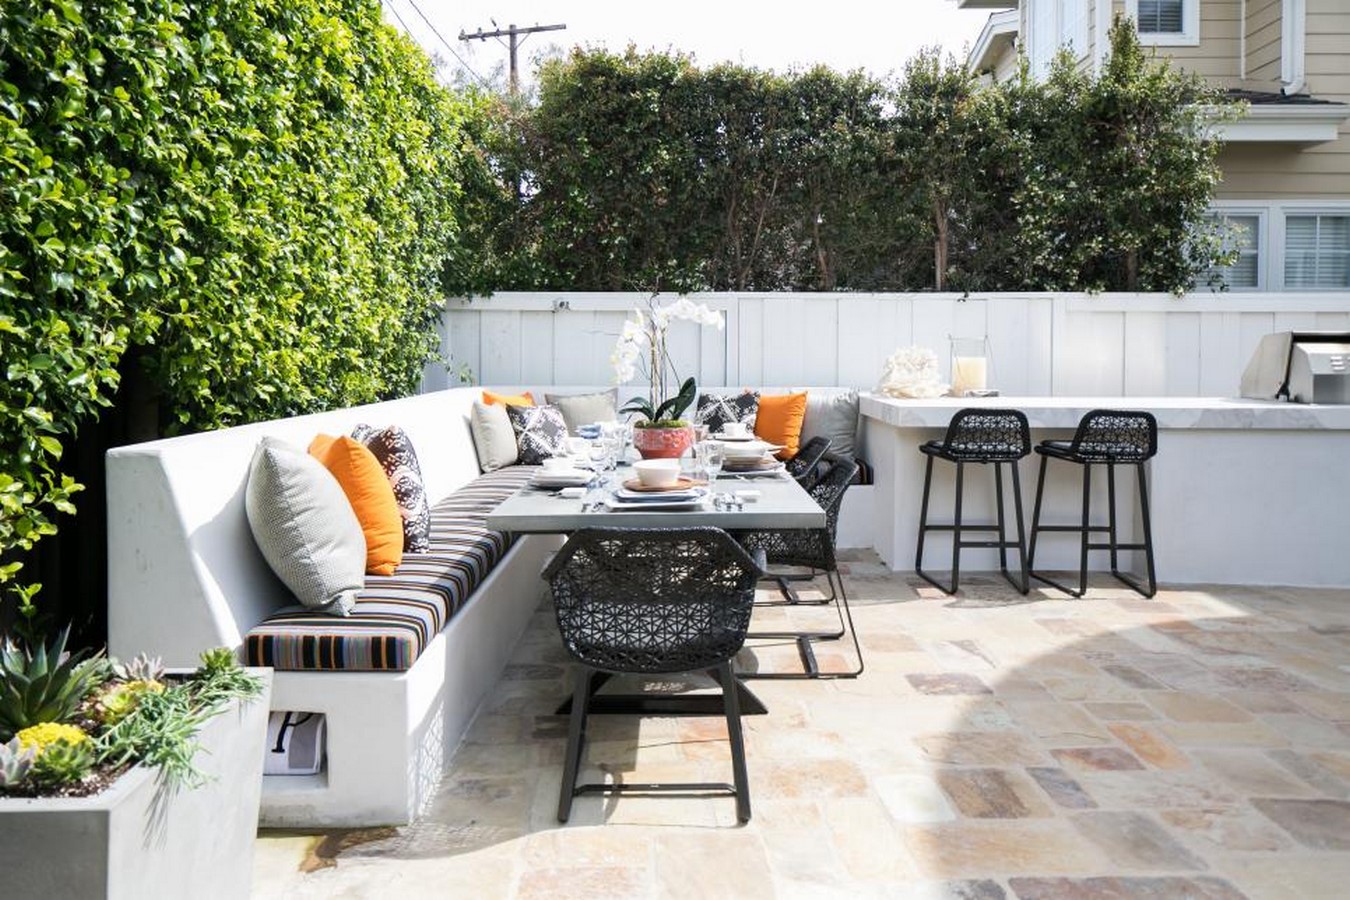 25 Examples of beautiful patios - Sheet9